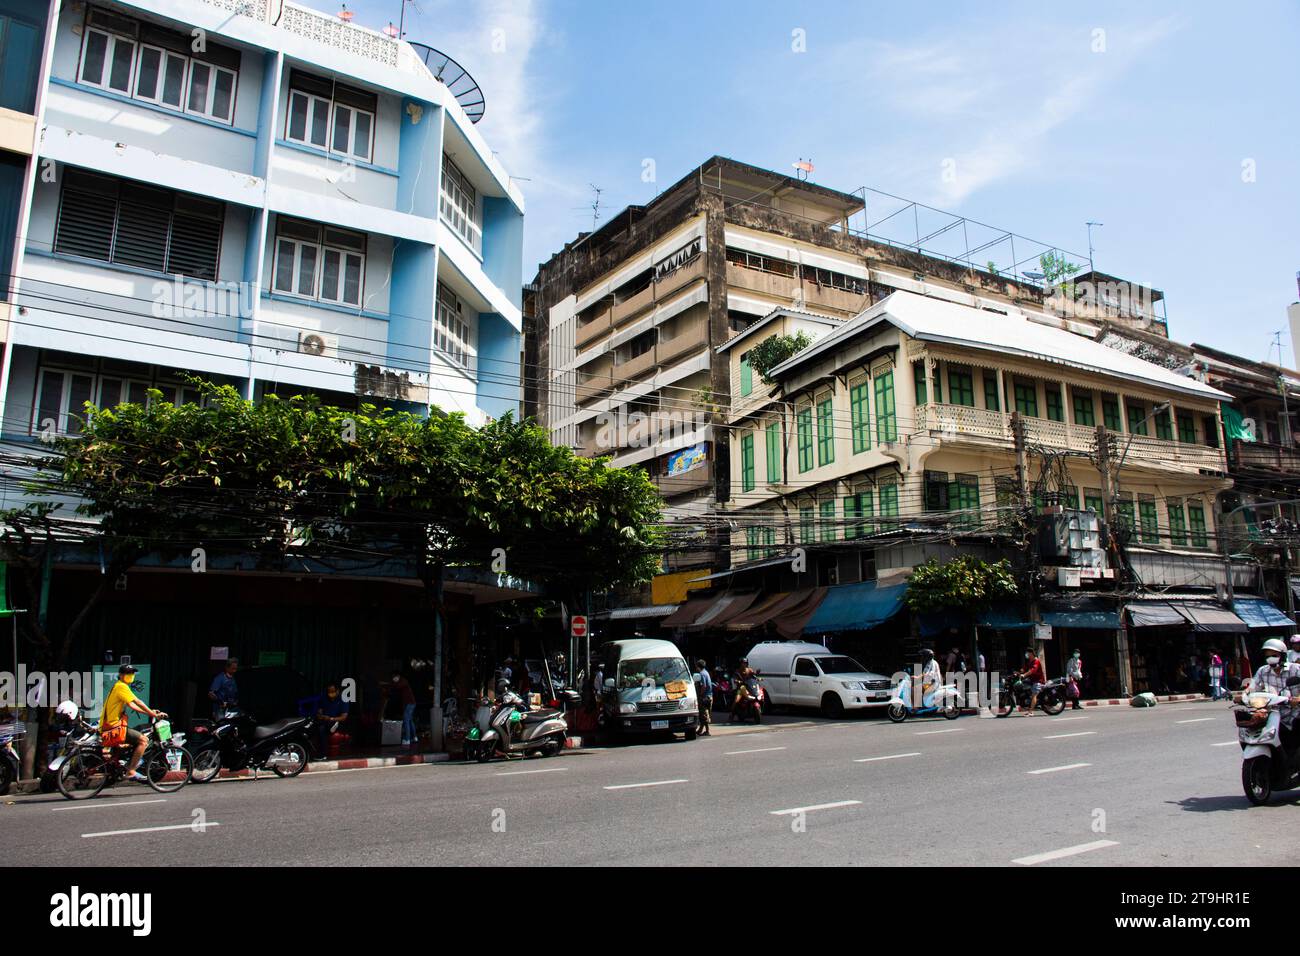 Vue paysage urbain paysage du centre-ville de sampeng marché et bazar phahurat avec le mode de vie de la population thaïlandaise locale conduisant le vélo sur la rue taff Banque D'Images